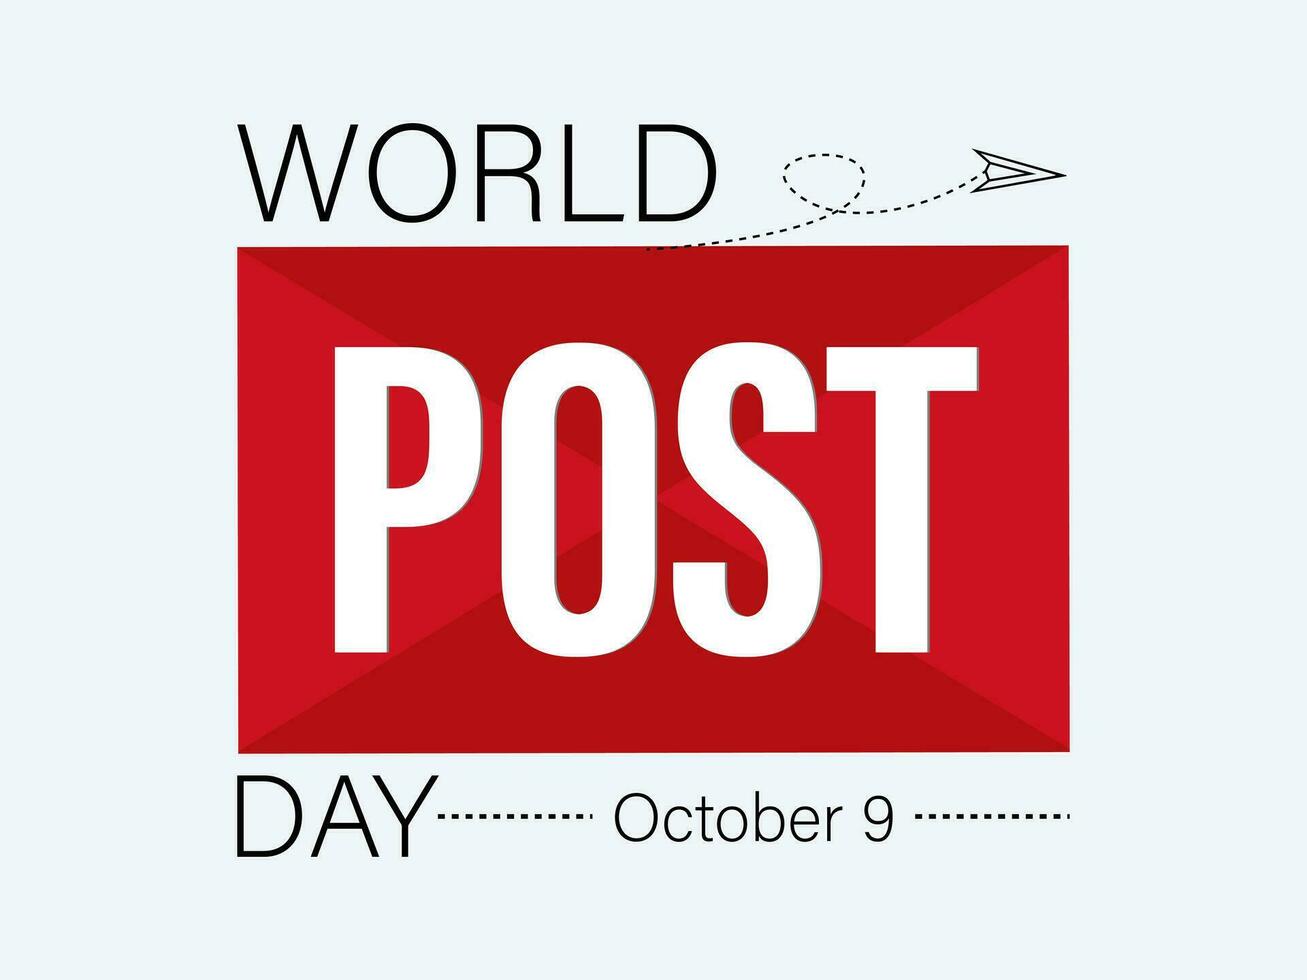 vetor gráfico do mundo postar dia Boa para mundo postar dia celebração. folheto bandeira, poster, cartão, fundo Projeto.